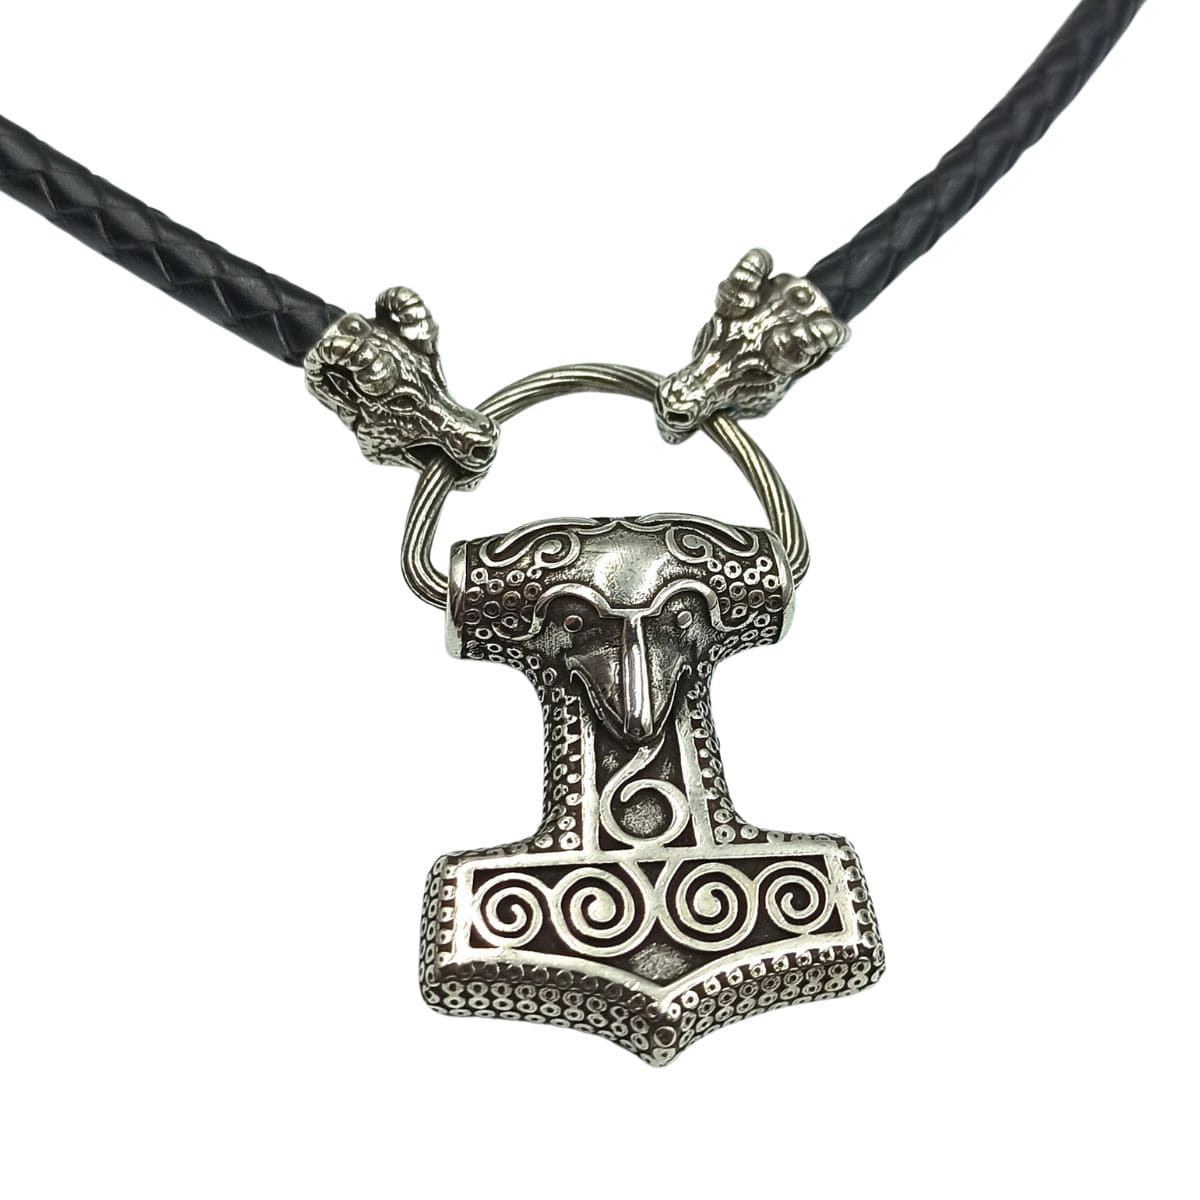 Mjolnir from Skane replica silver pendant +Goat necklace  